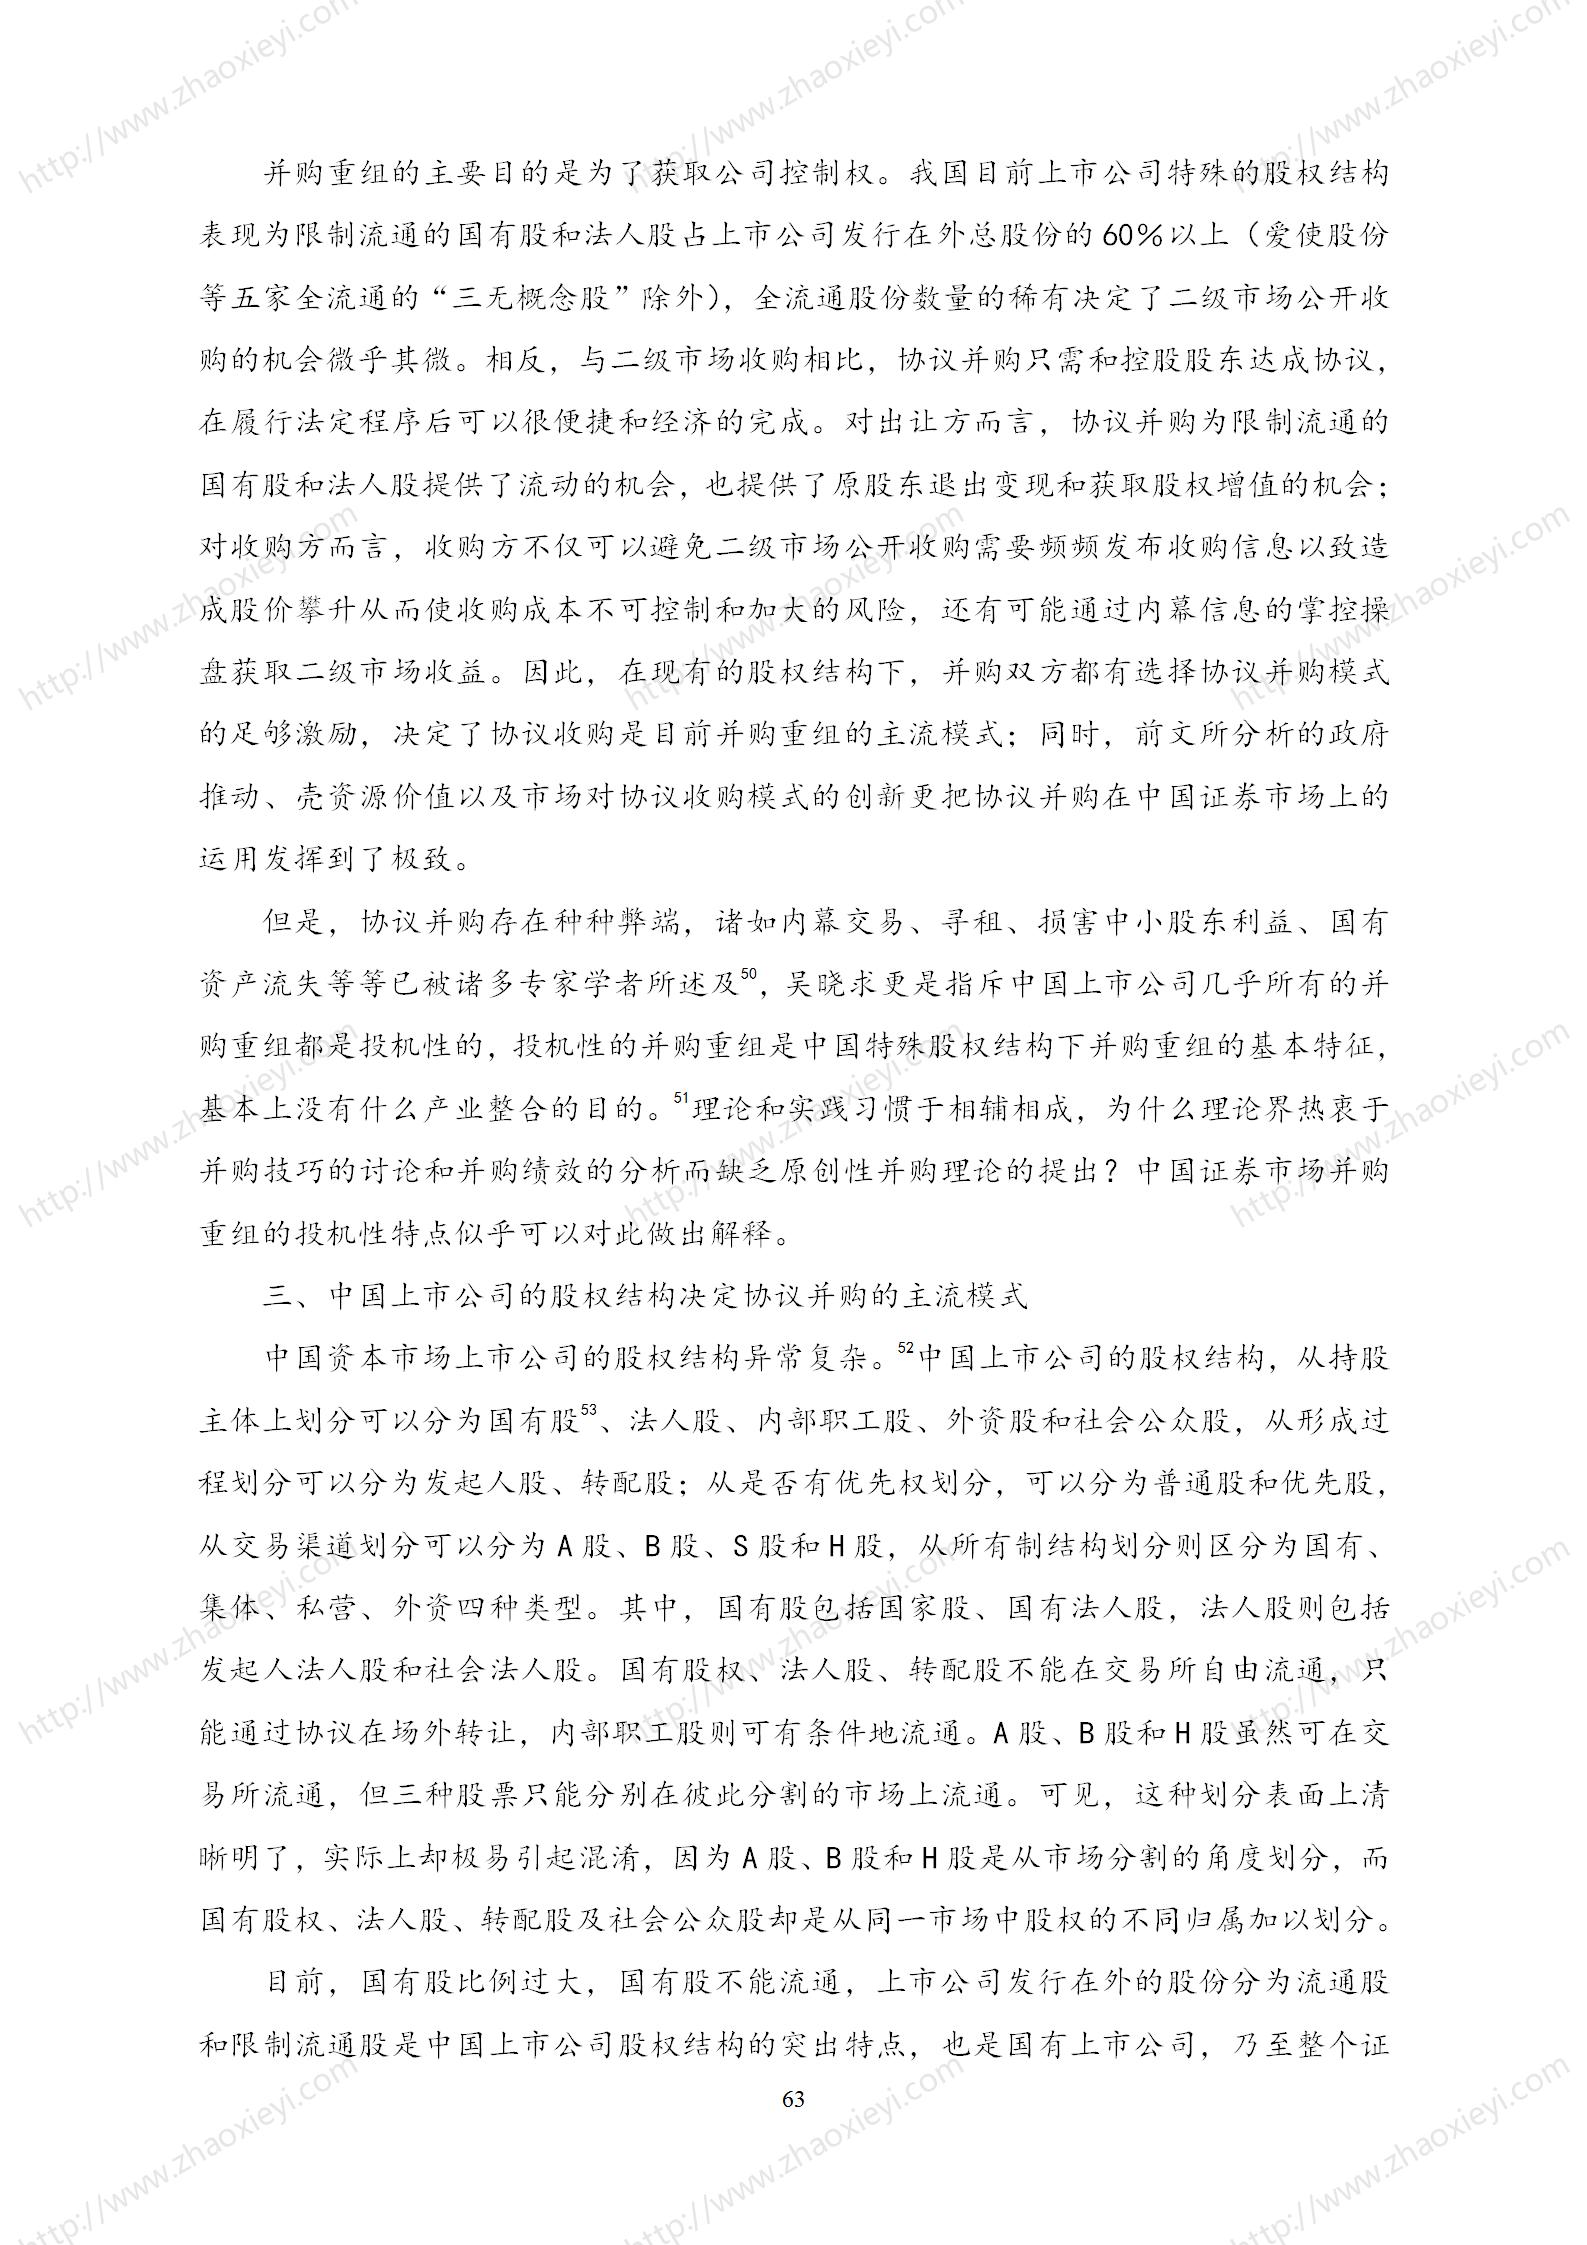 中国上市公司并购重组的模式研究_34.jpg